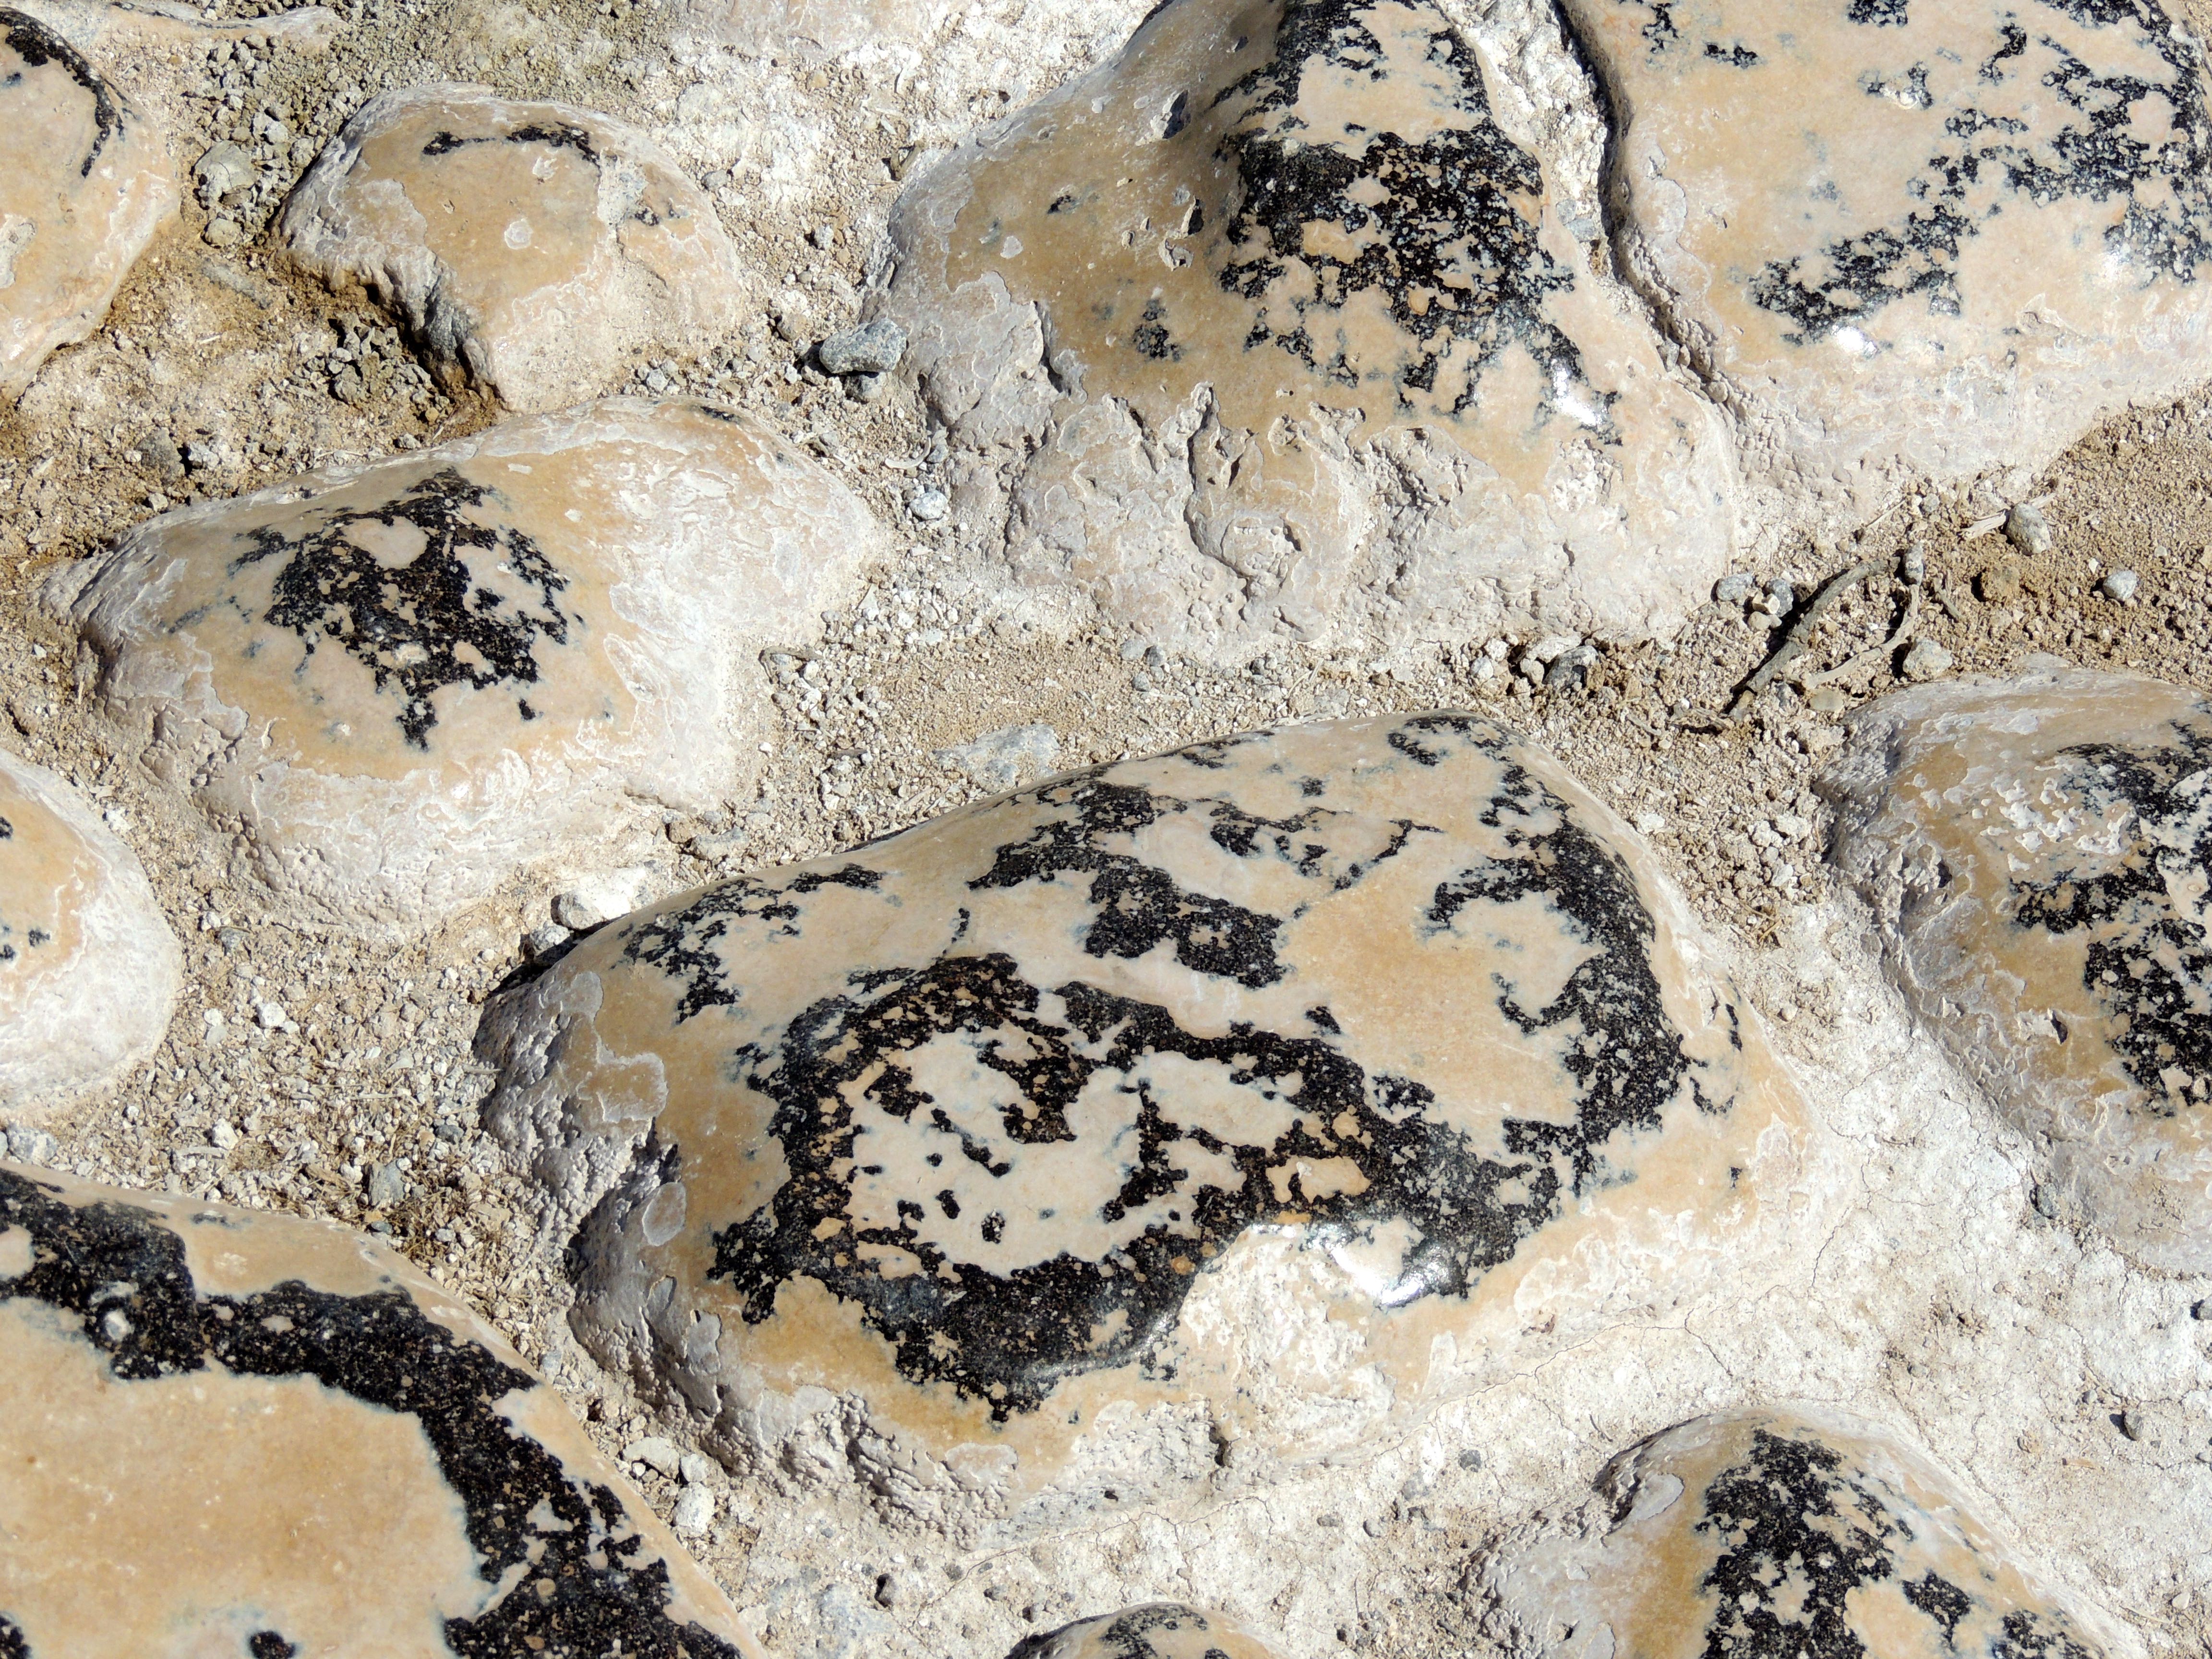 Rock Polished by Sea Lion Urine